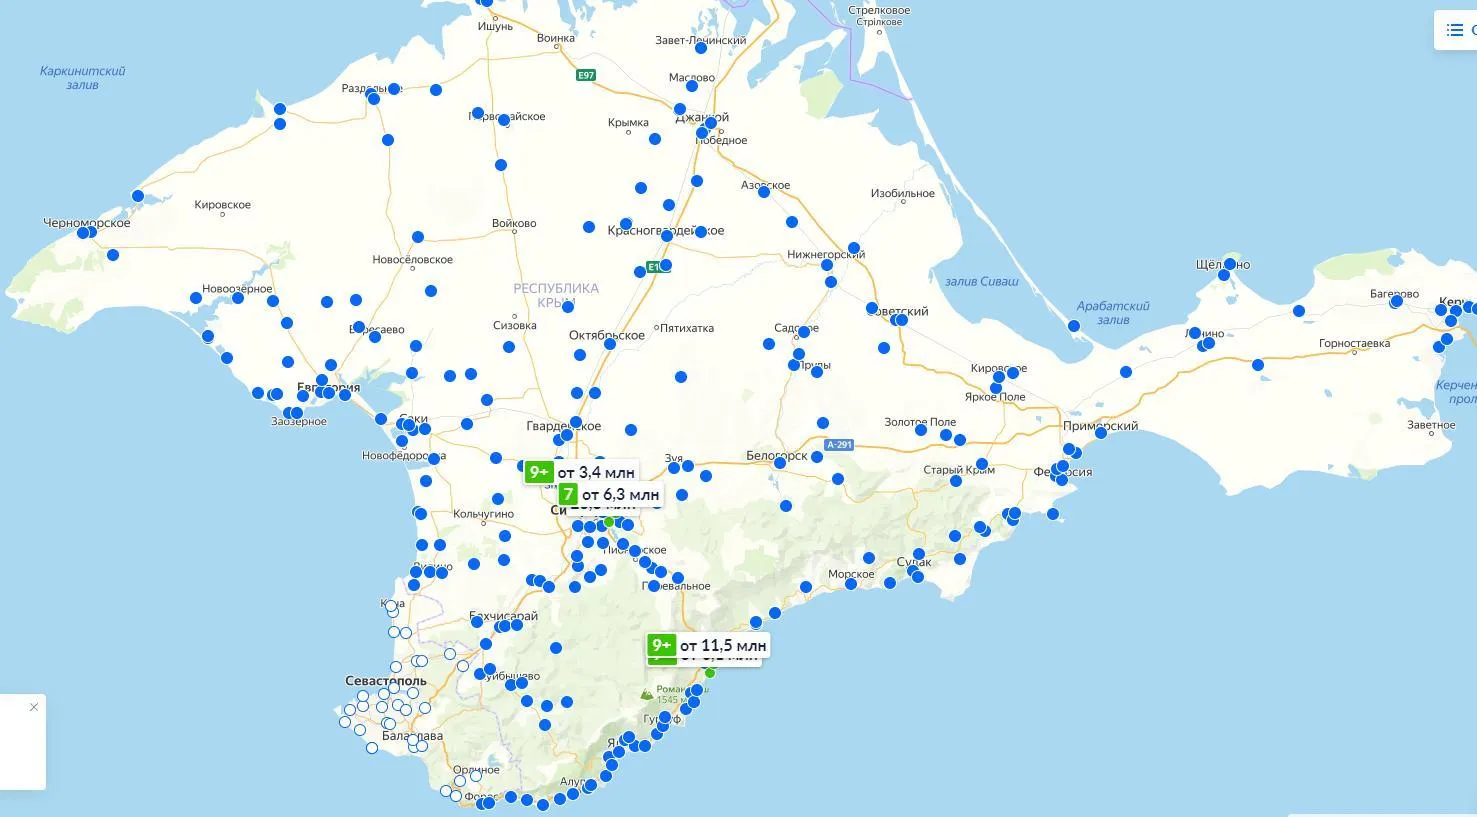 карта выставленных на продажу объектов недвижимости в Крыму